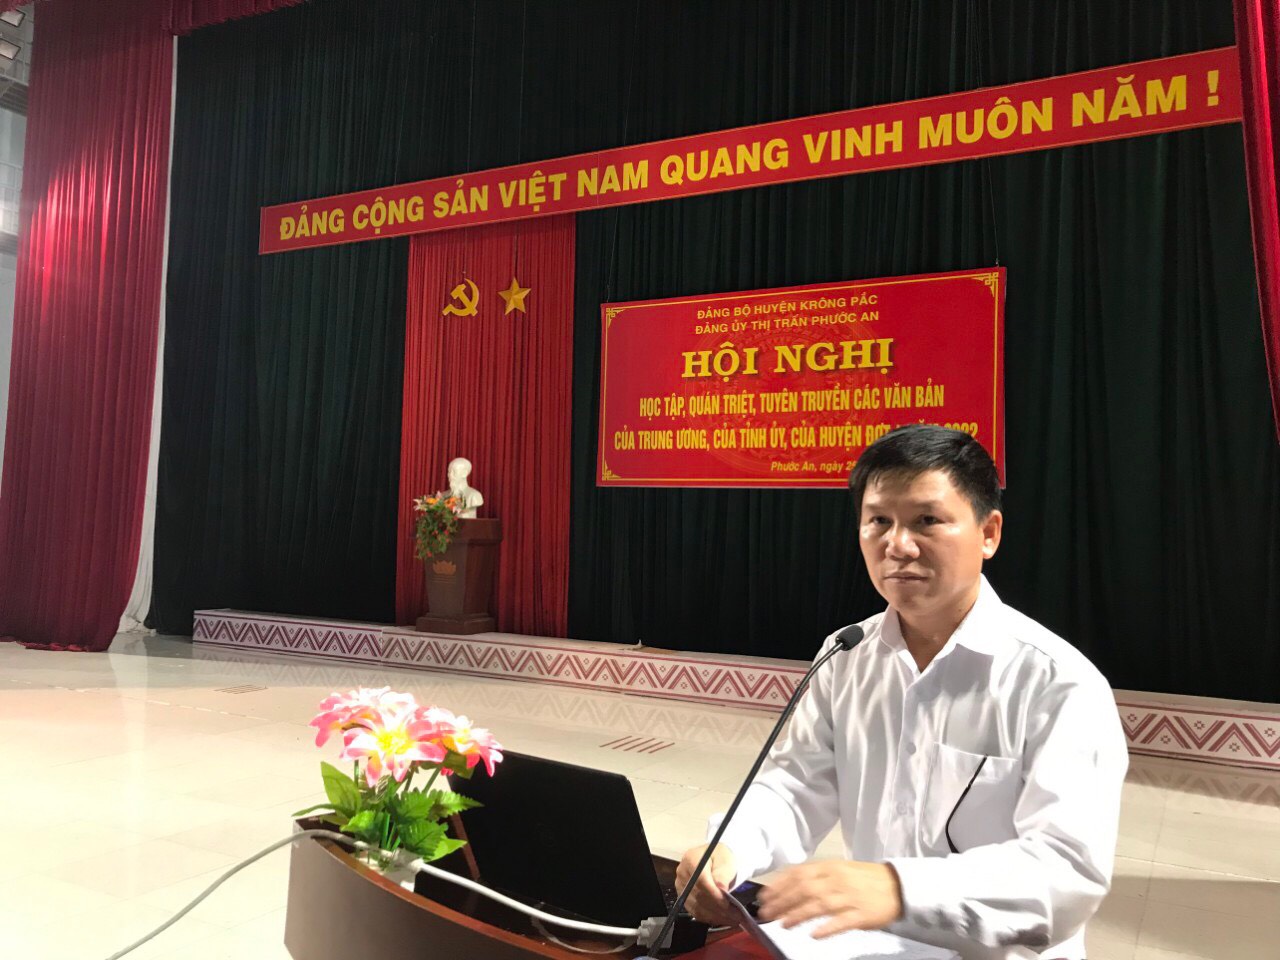 Đảng ủy thị trấn Phước An tổ chức Hội nghị học tập, quán triệt tuyên truyền các văn bản của Trung ương, của Tỉnh ủy, của Huyện ủy đợt 4 năm 2022